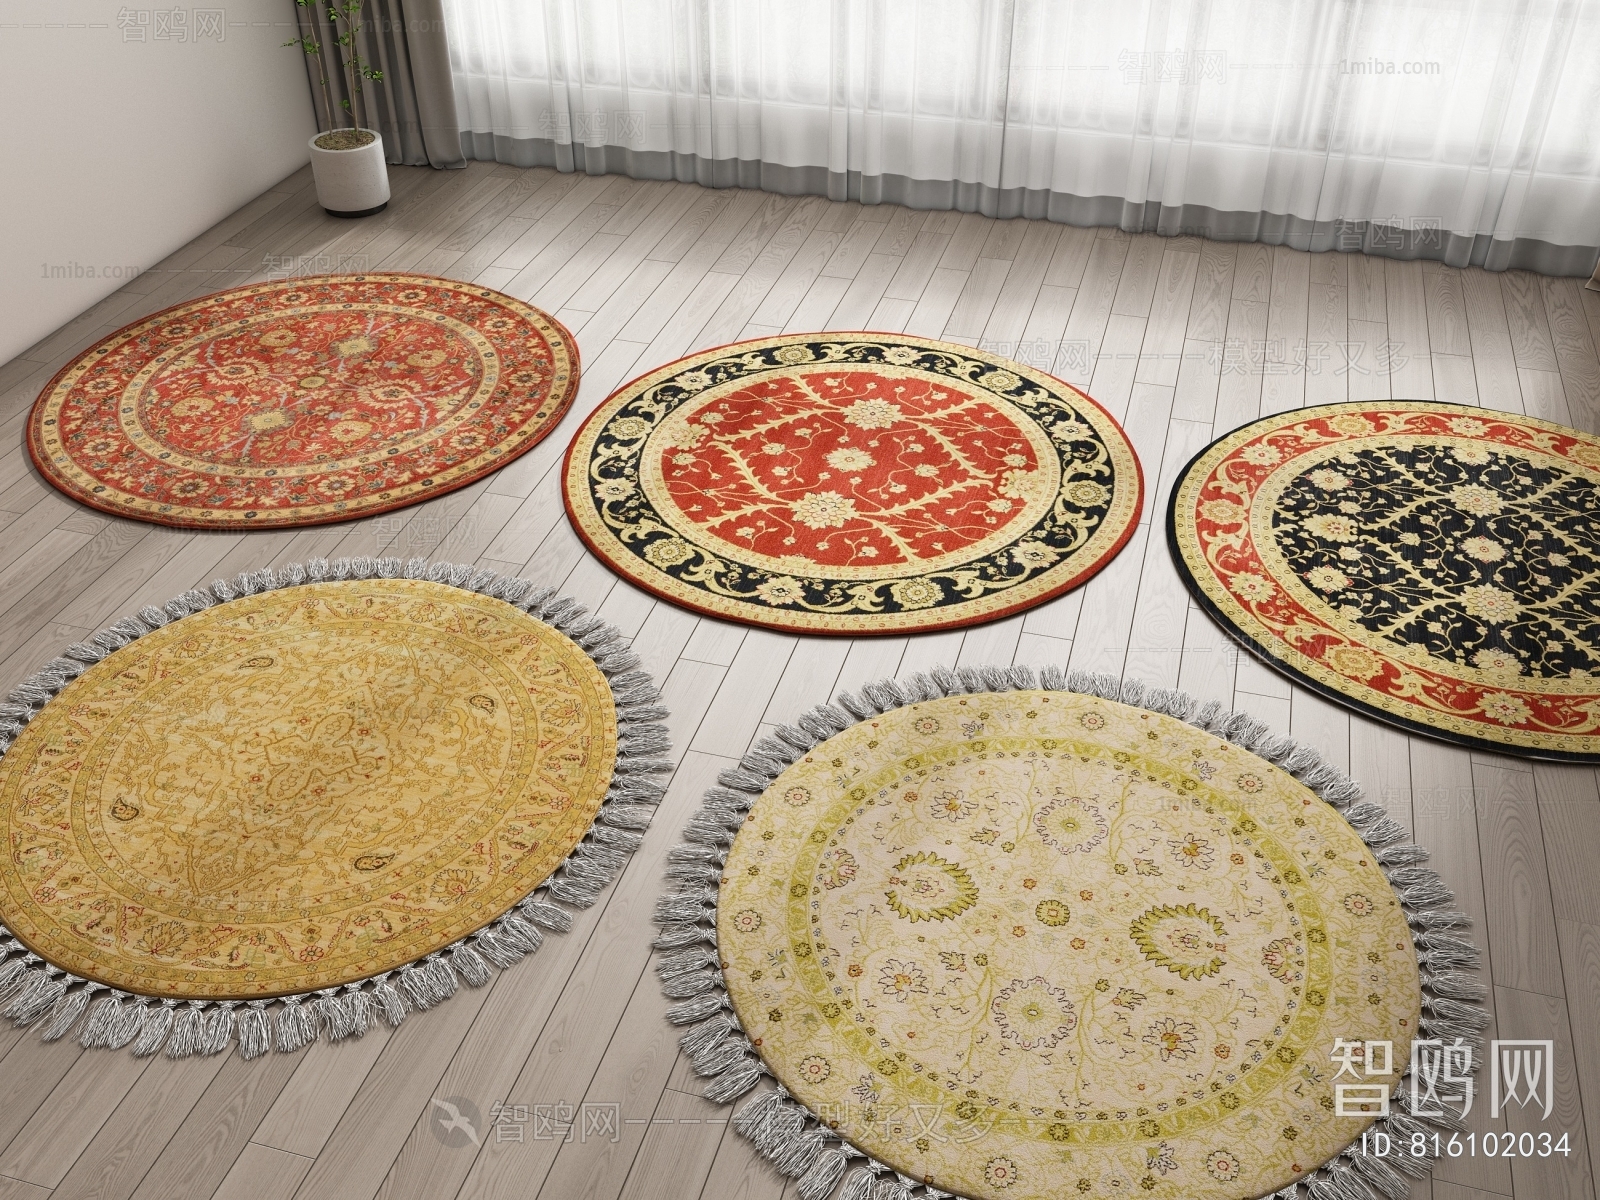 Chinese Style Circular Carpet